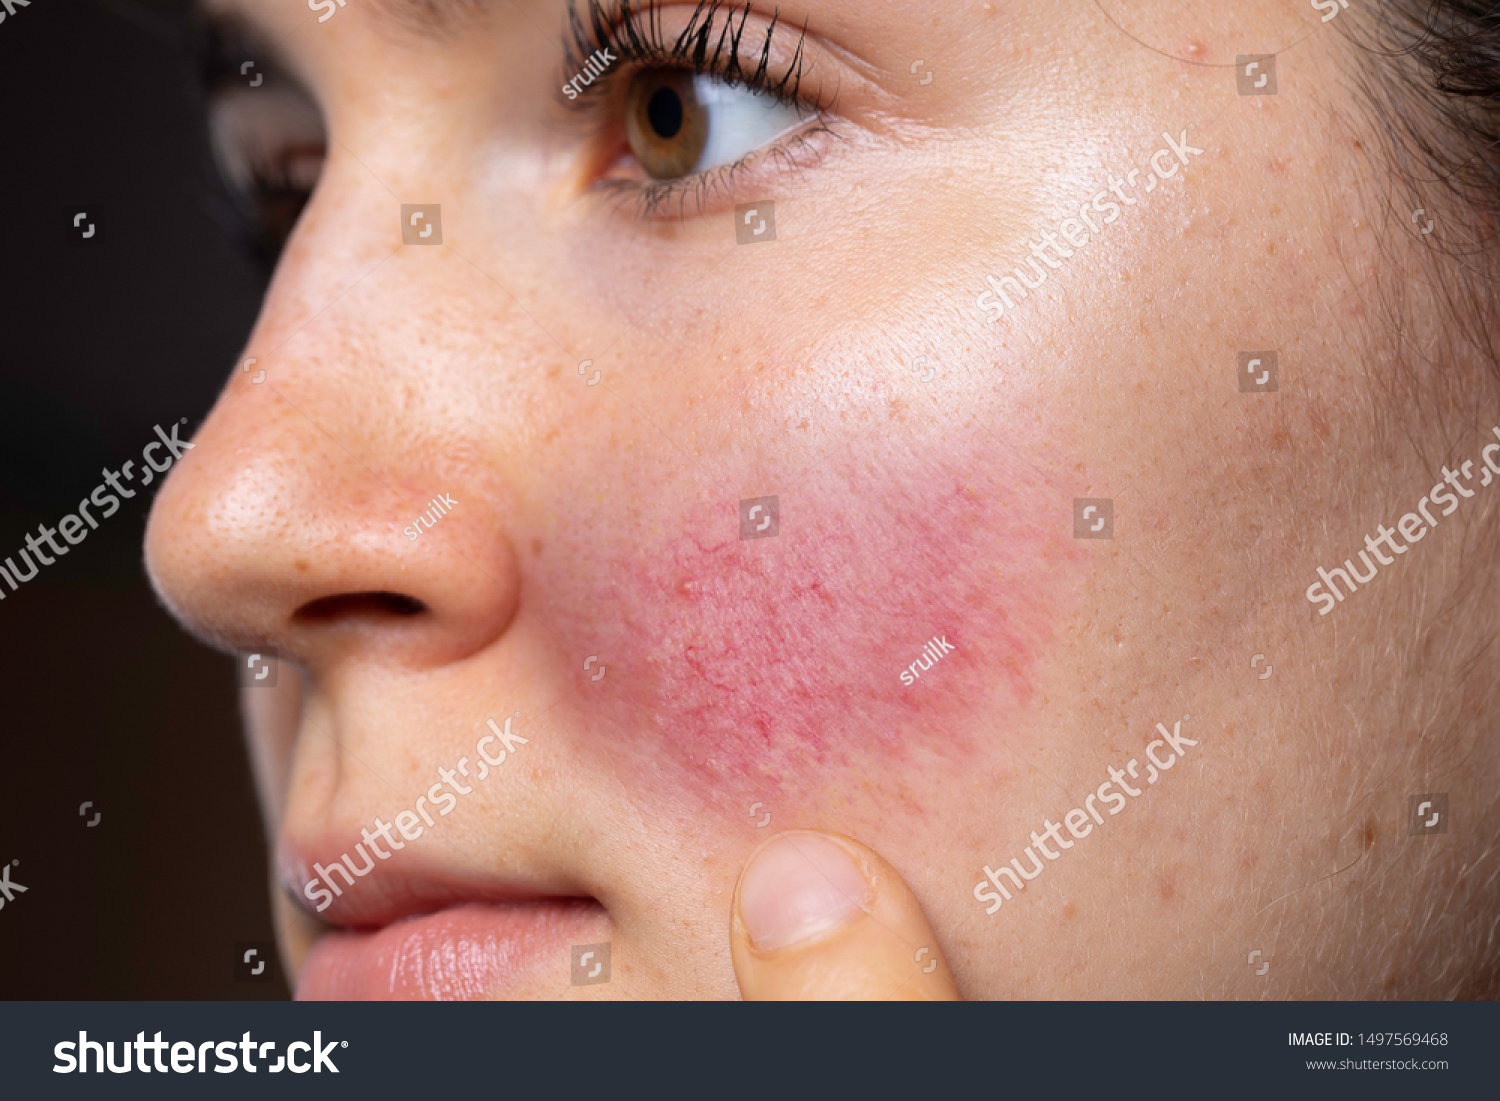 白人の若い女性が 赤い紅潮した頬を指し 血管を拡張し バラケアの徴候を示す の写真素材 今すぐ編集